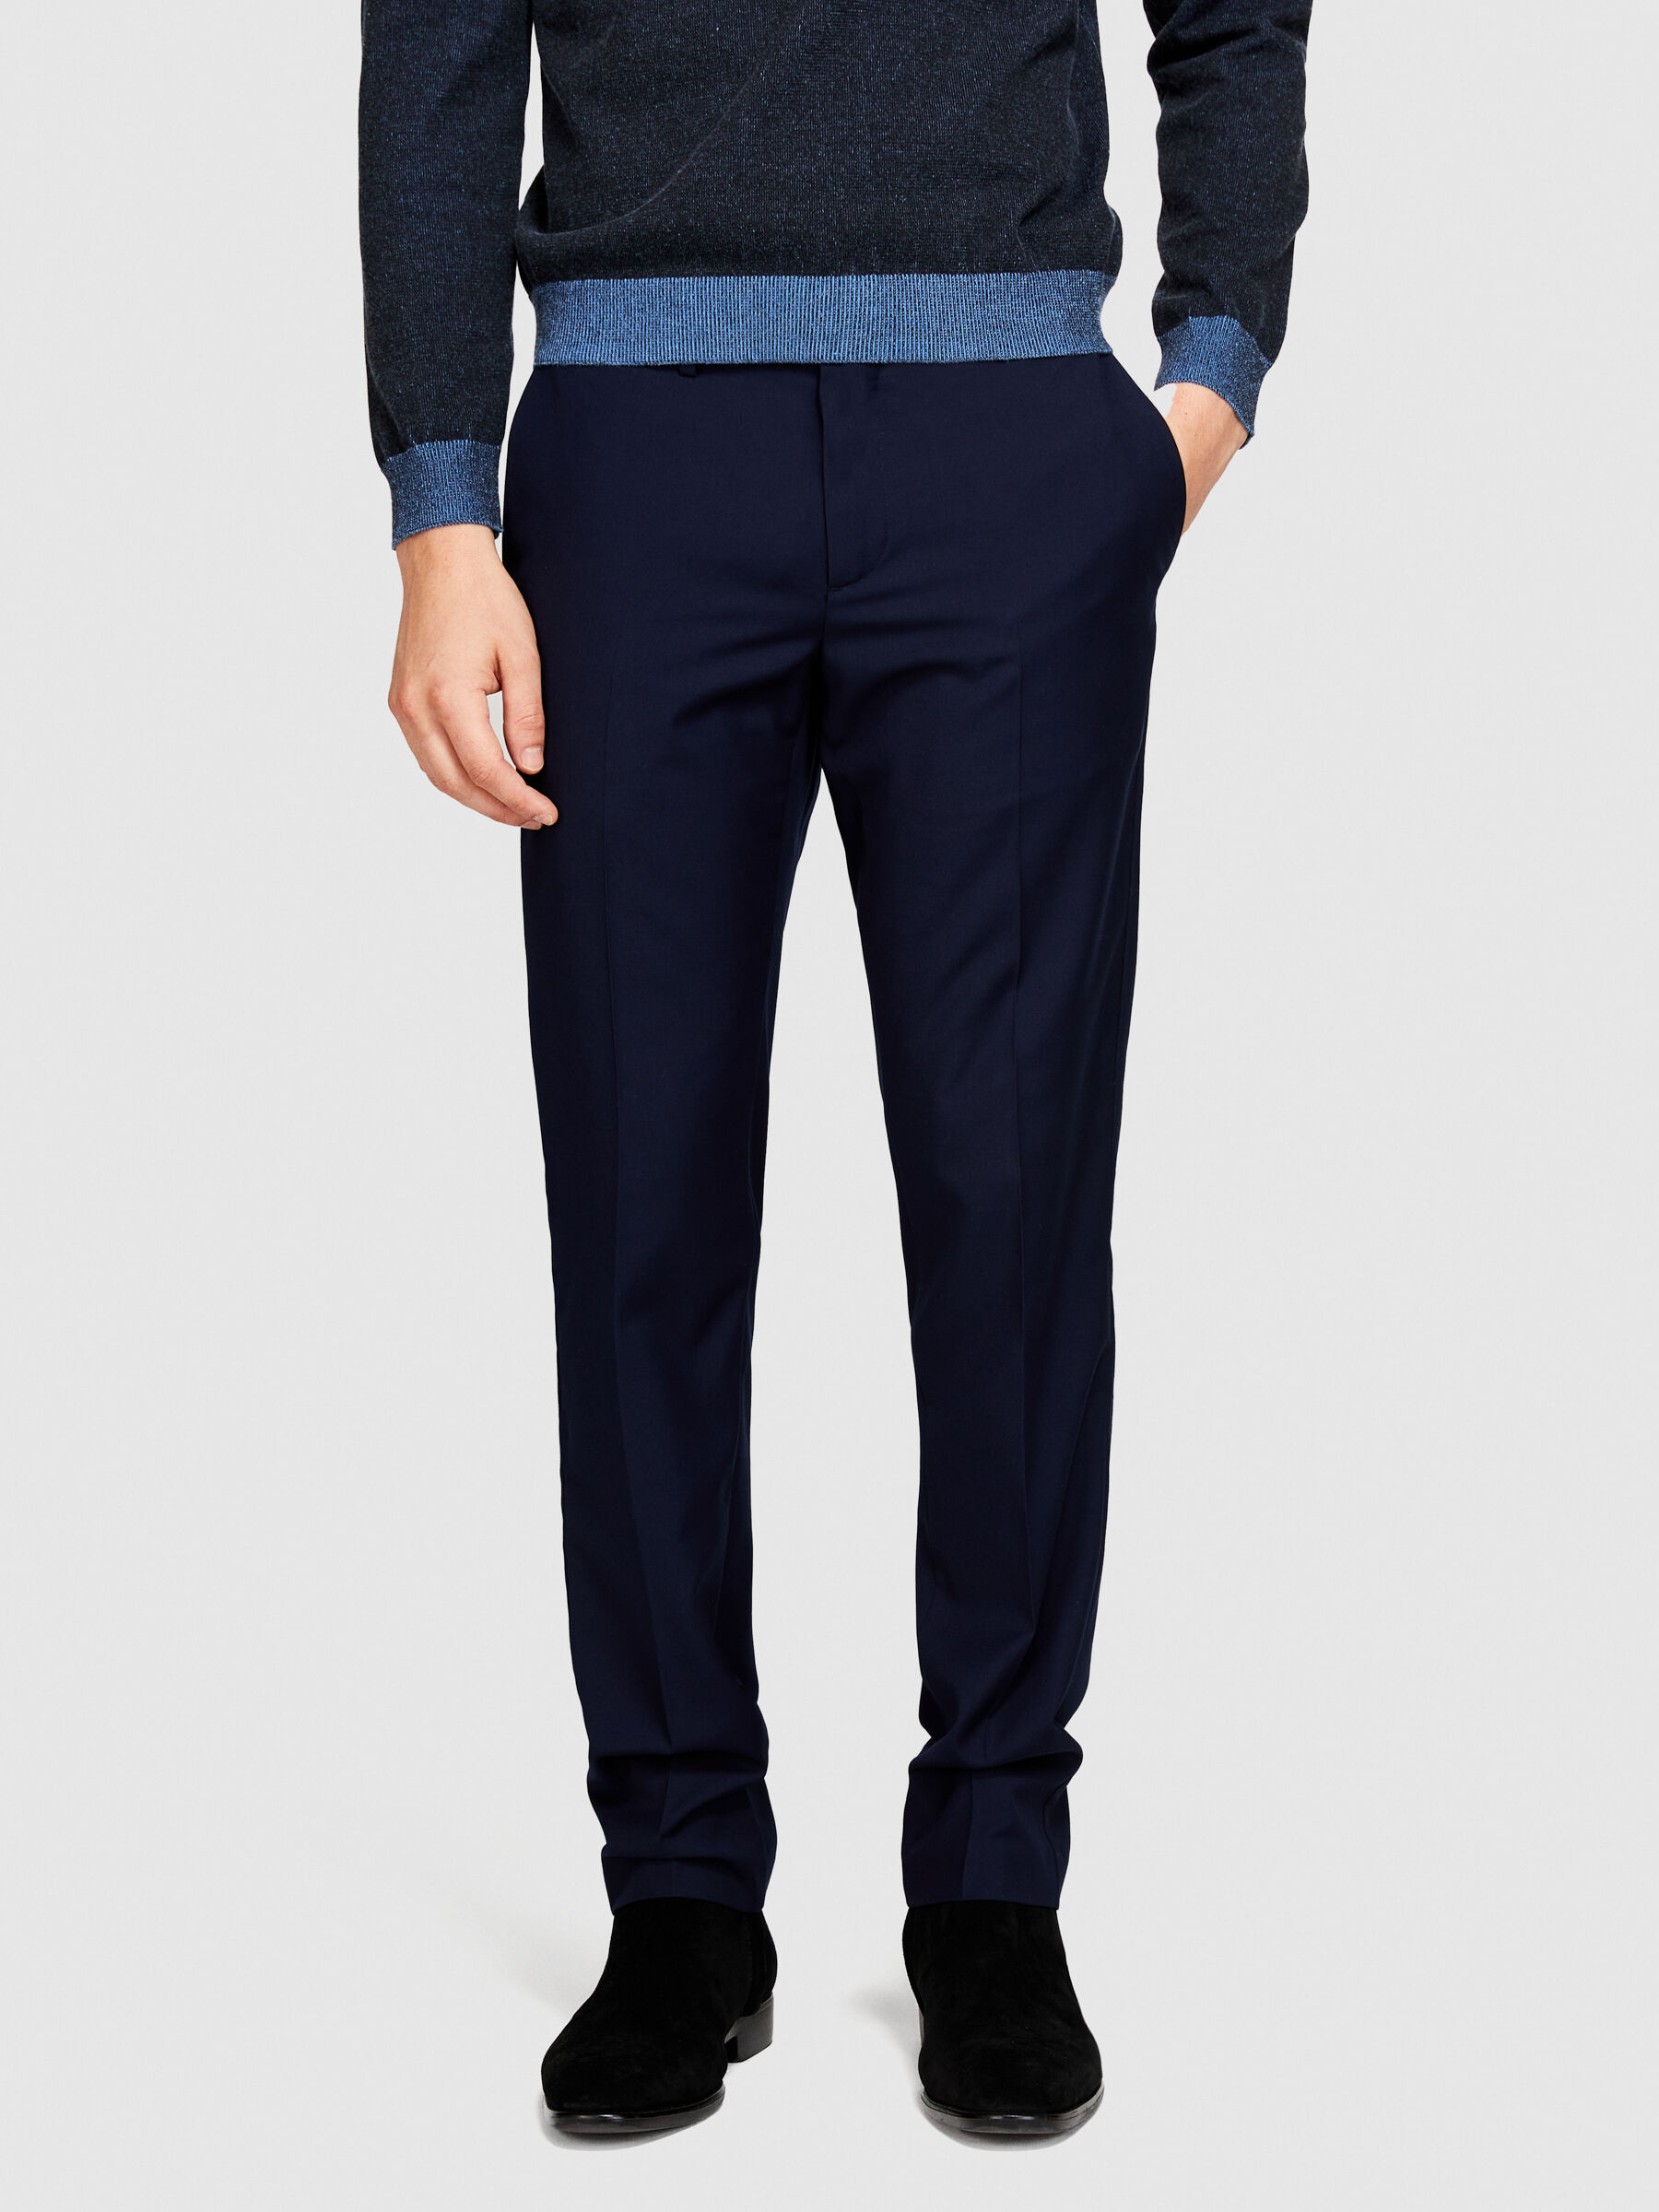 Buy Pesado Men Solid Dark Blue Formal Trousers Online at Best Prices in  India - JioMart.